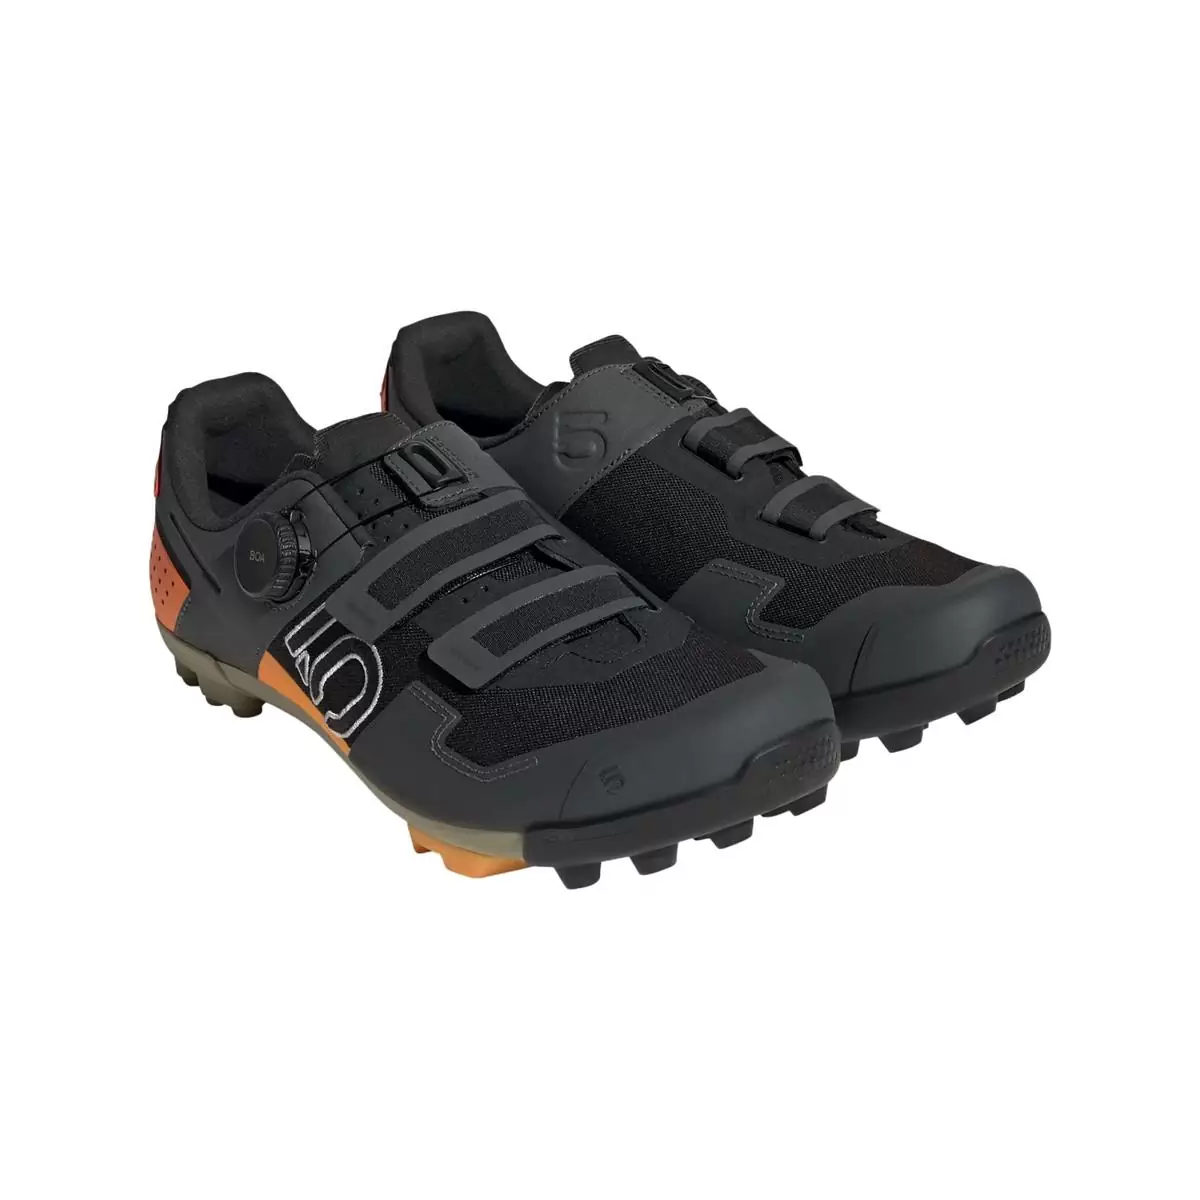 Clip 5.10 Kestrel Boa MTB Shoes Black/Orange Size 42 #1